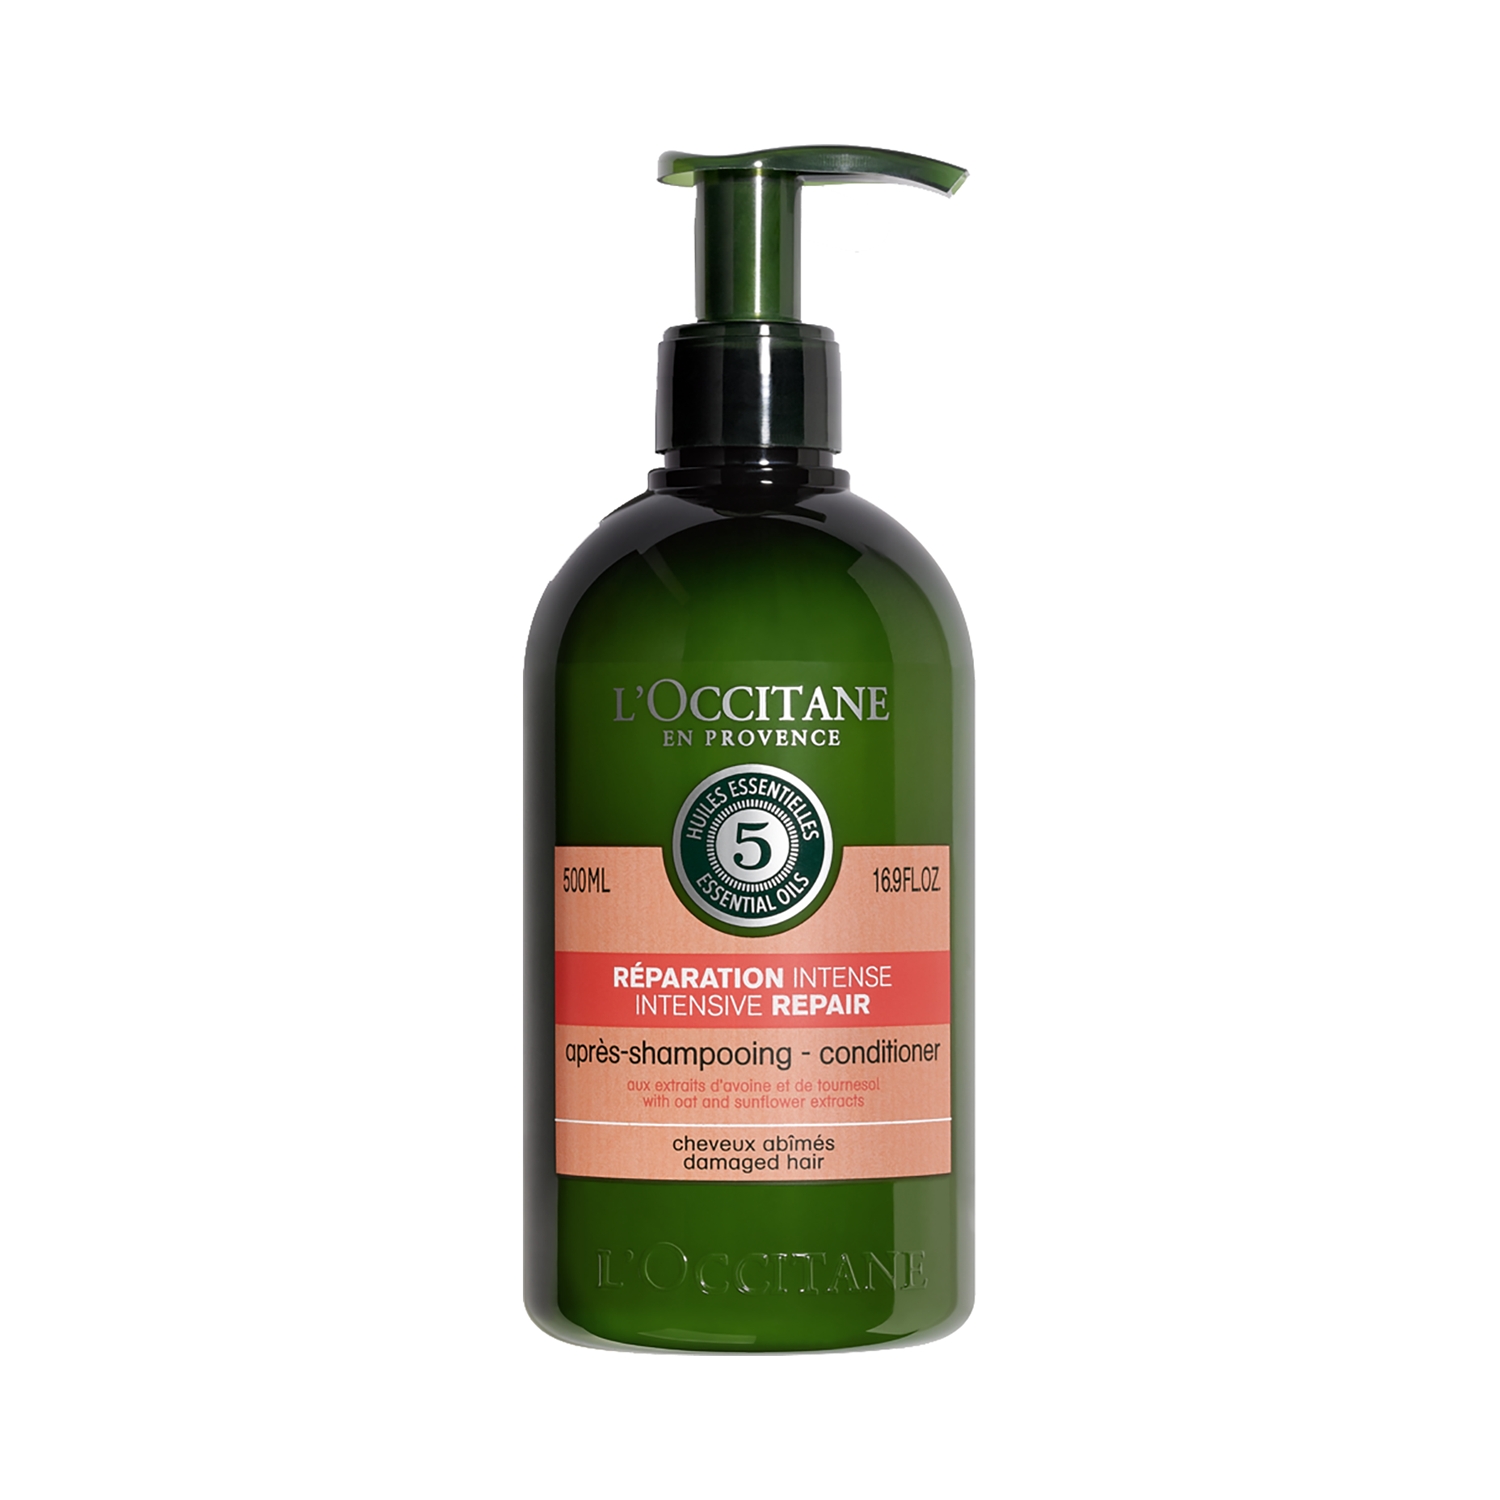 L'occitane | L'occitane 5 Essential Oils Intensive Repair Conditioner (500ml)